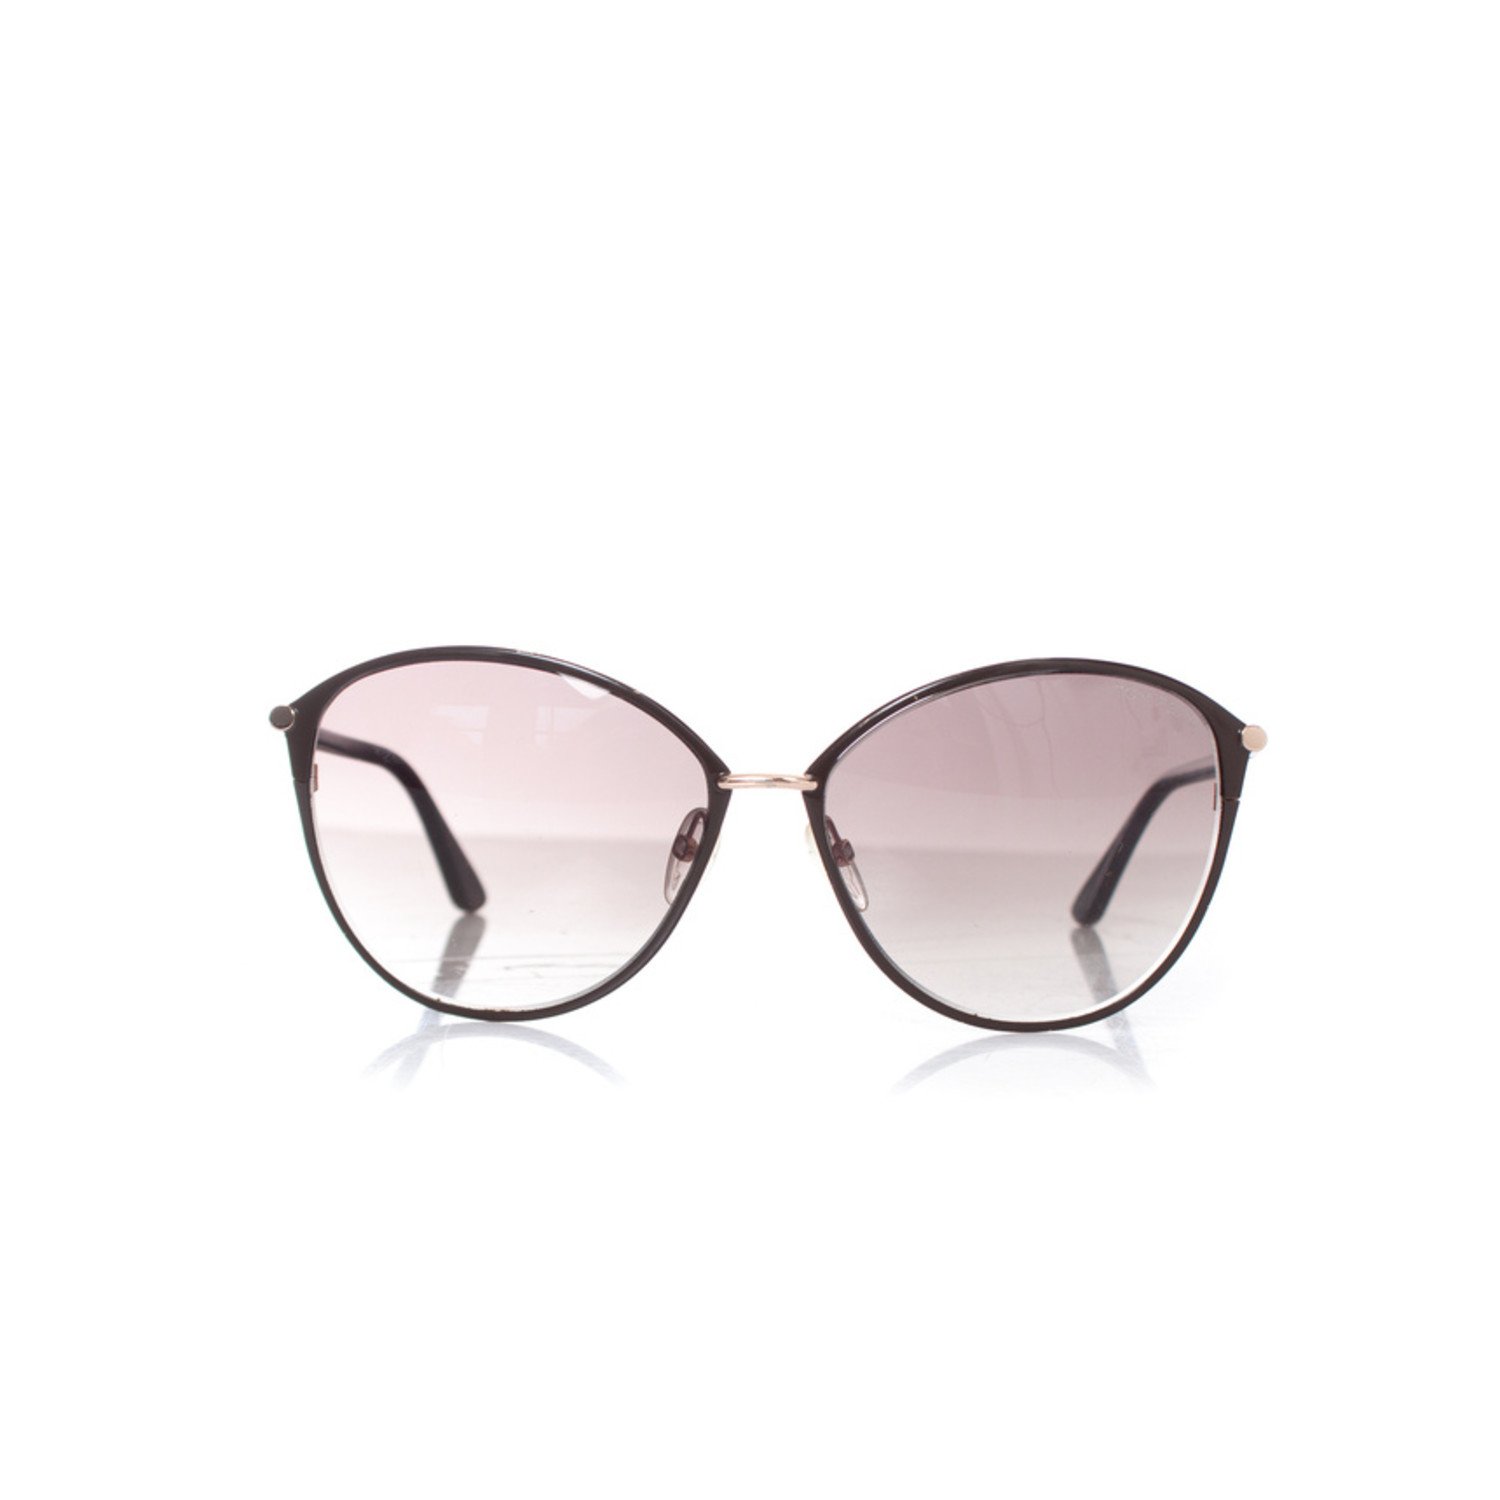 Tom Ford, Penelope sunglasses - Unique Designer Pieces